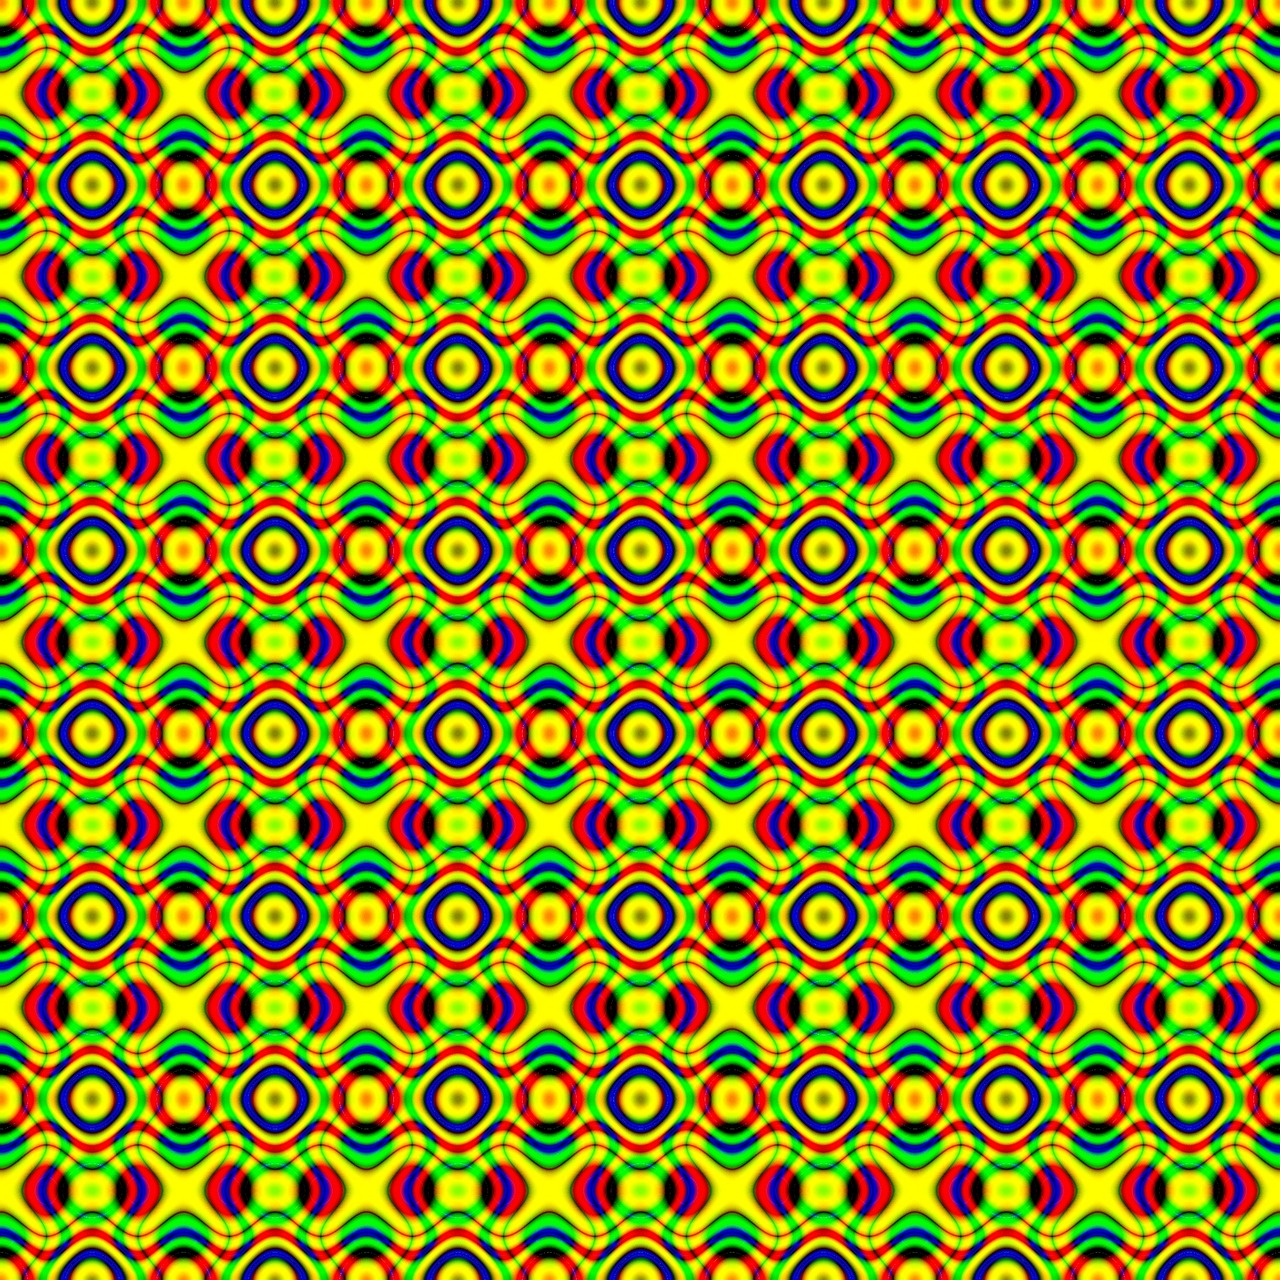 background pattern geometrical free photo